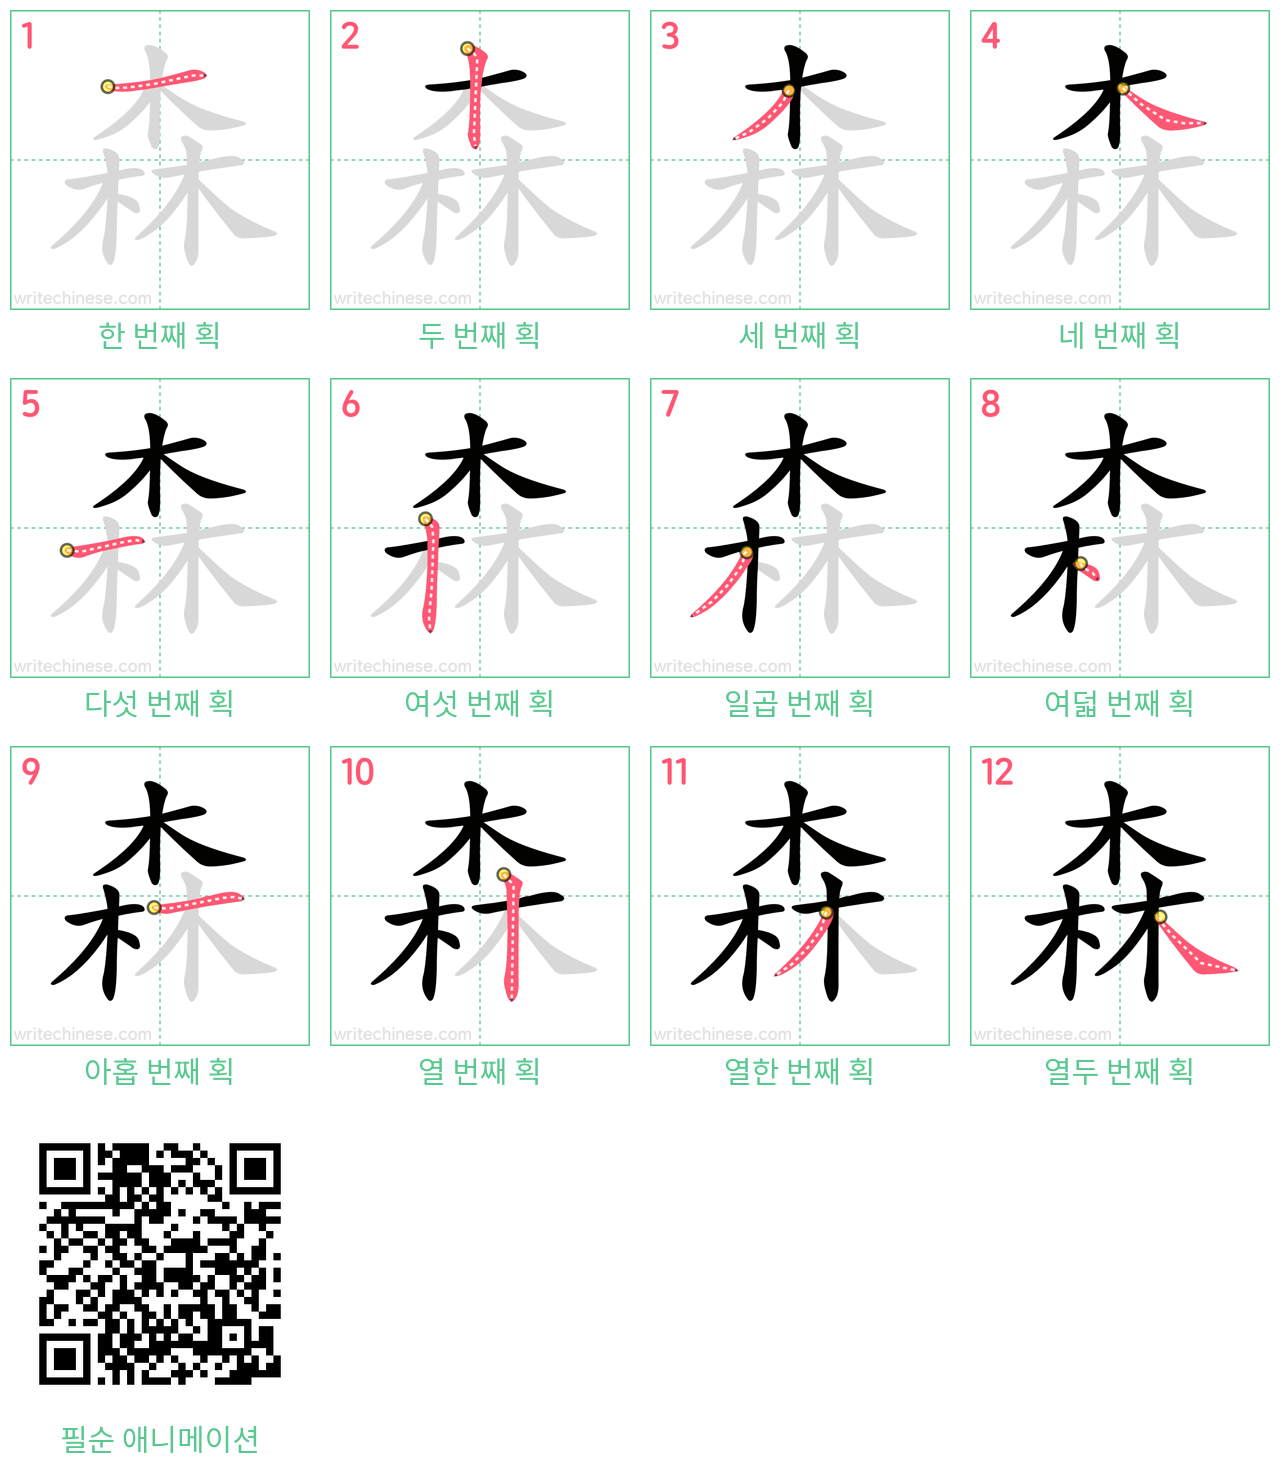 森 step-by-step stroke order diagrams